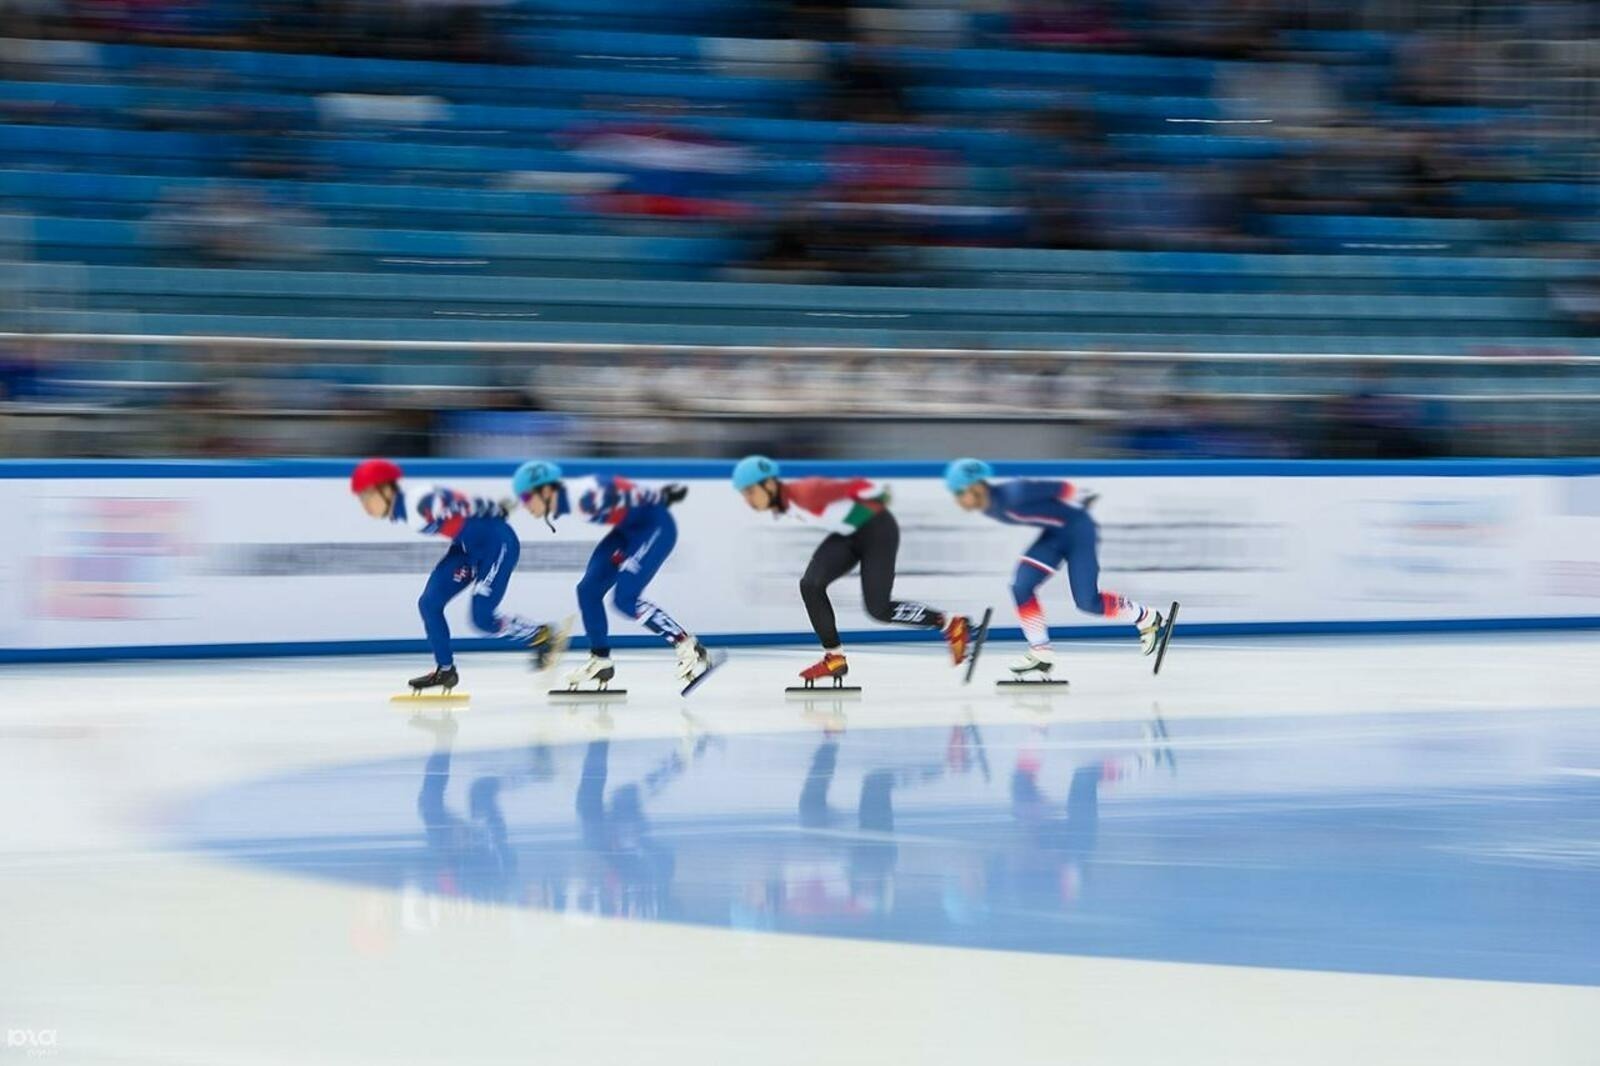 Олимпия уйындары чемпионы Өфөлә уҙасаҡ ярыштарға саҡыра.